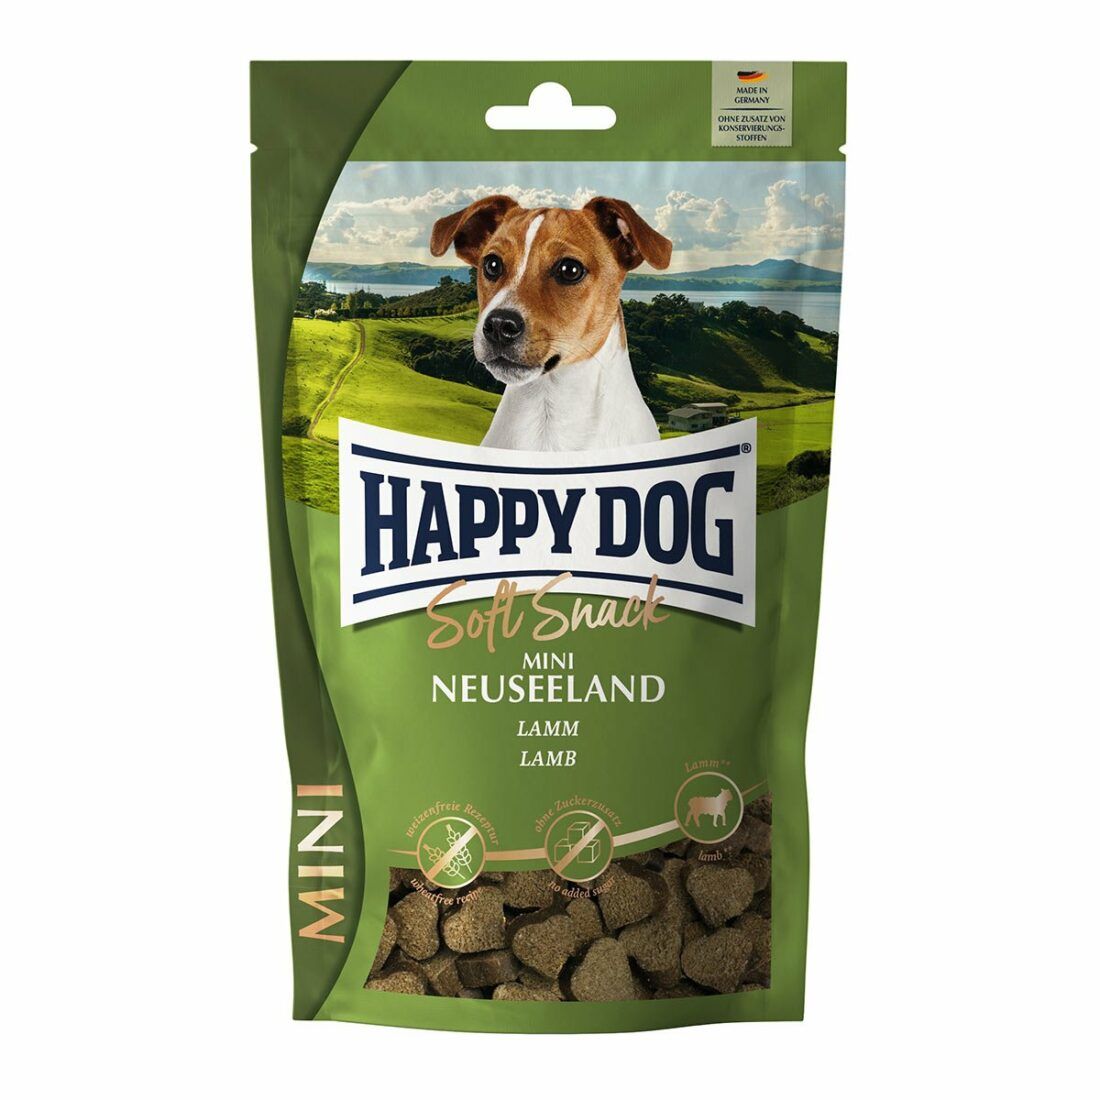 Happy Dog SoftSnack Mini Neuseeland 5